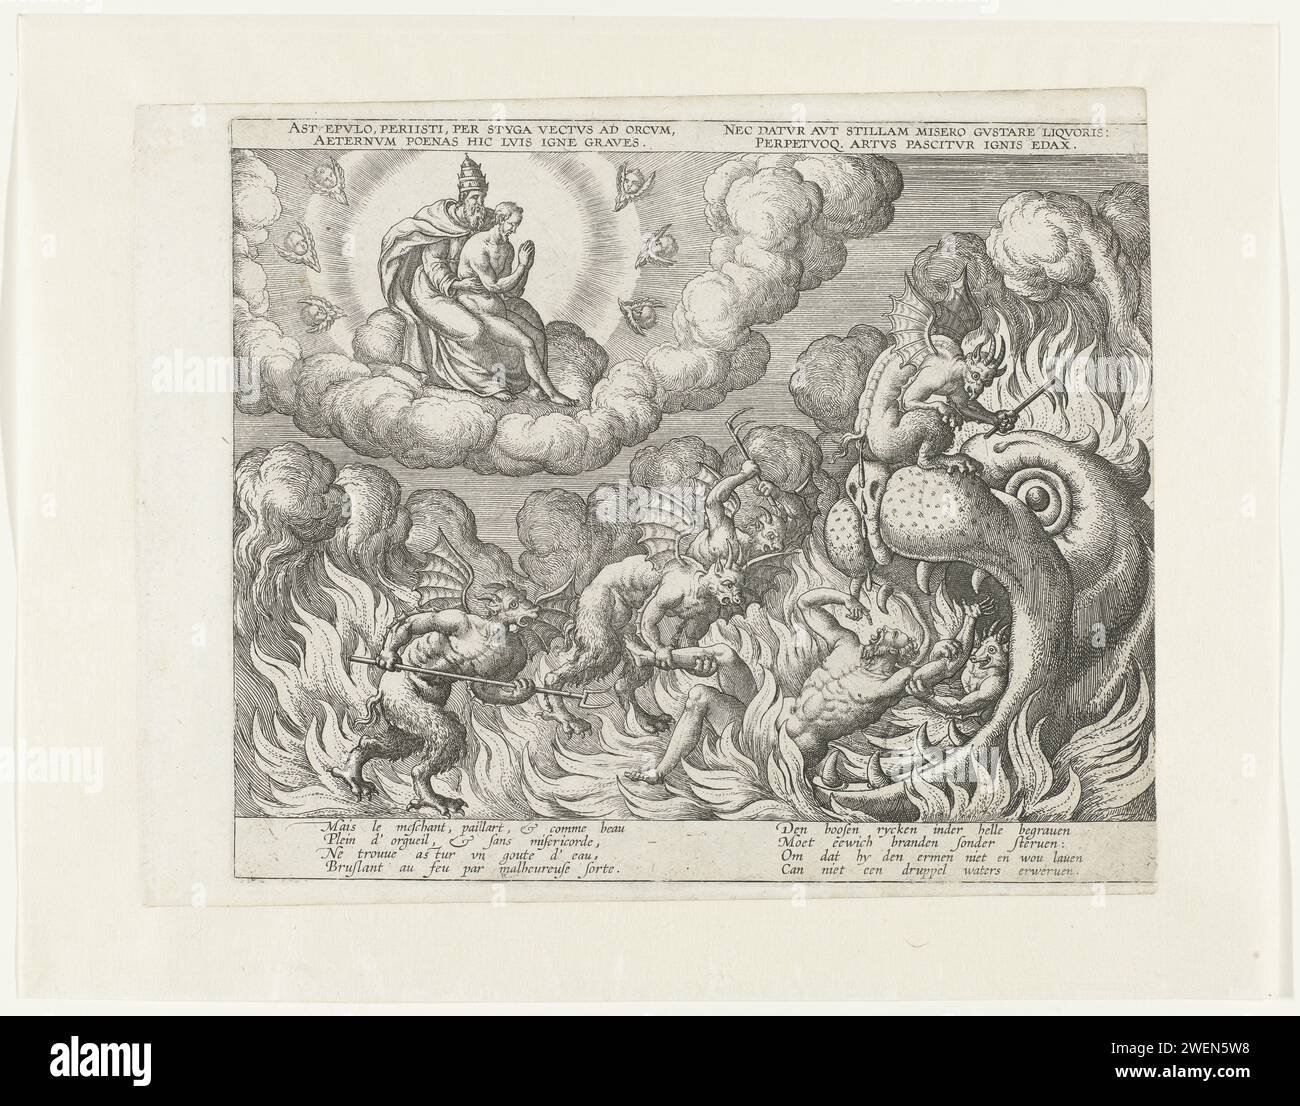 Visione dell'uomo ricco all'inferno, c. 1575 - c. 1599 stampa Lazzaro siede sul grembo di Dio in cielo. I diavoli sono l'uomo ricco alla porta dell'inferno. Con la parte superiore in latino e didascalie in francese e olandese. Incisione di carta / incisione all'inferno le immersioni vedono Lazzaro in paradiso; di solito le immersioni puntano sulla sua lingua. Ingresso dell'inferno come bocca mostruosa (del Leviatano). diavolo(i) e demoni Foto Stock